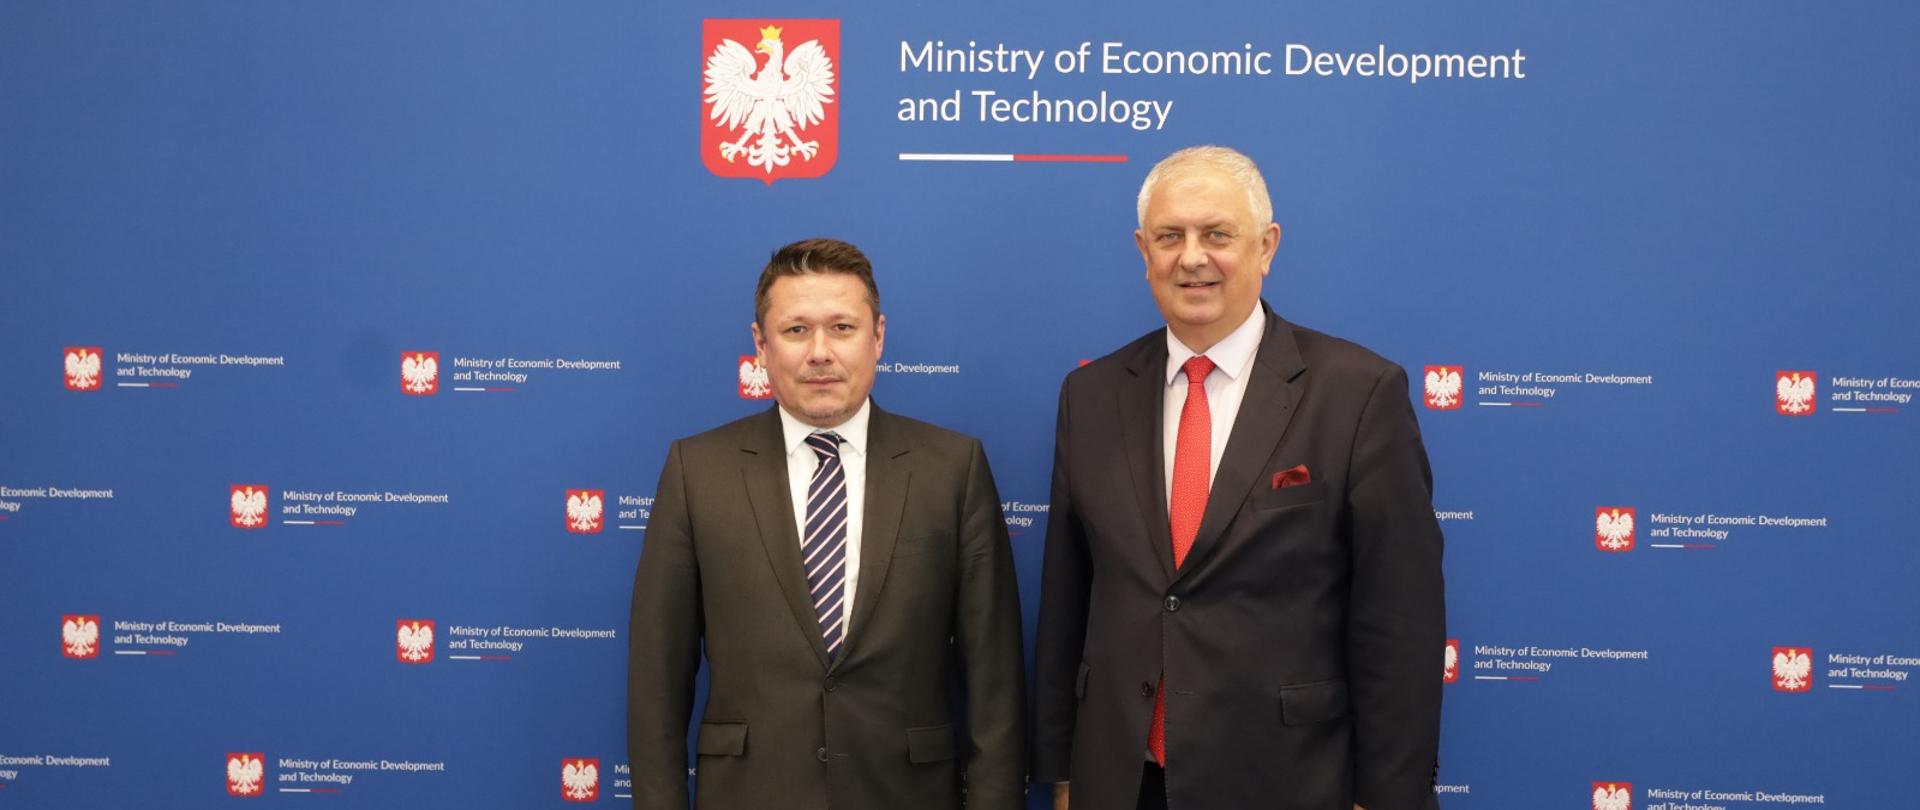 Wiceminister Grzegorz Piechowiak z Ambasadorem Rumunii Cosminem Onisii. Na zdjęciu widać wiceminiser wraz z Ambasadorem Rumunii na granatowym tle z logotypem Ministerstwa Rozwoju i Technologii.